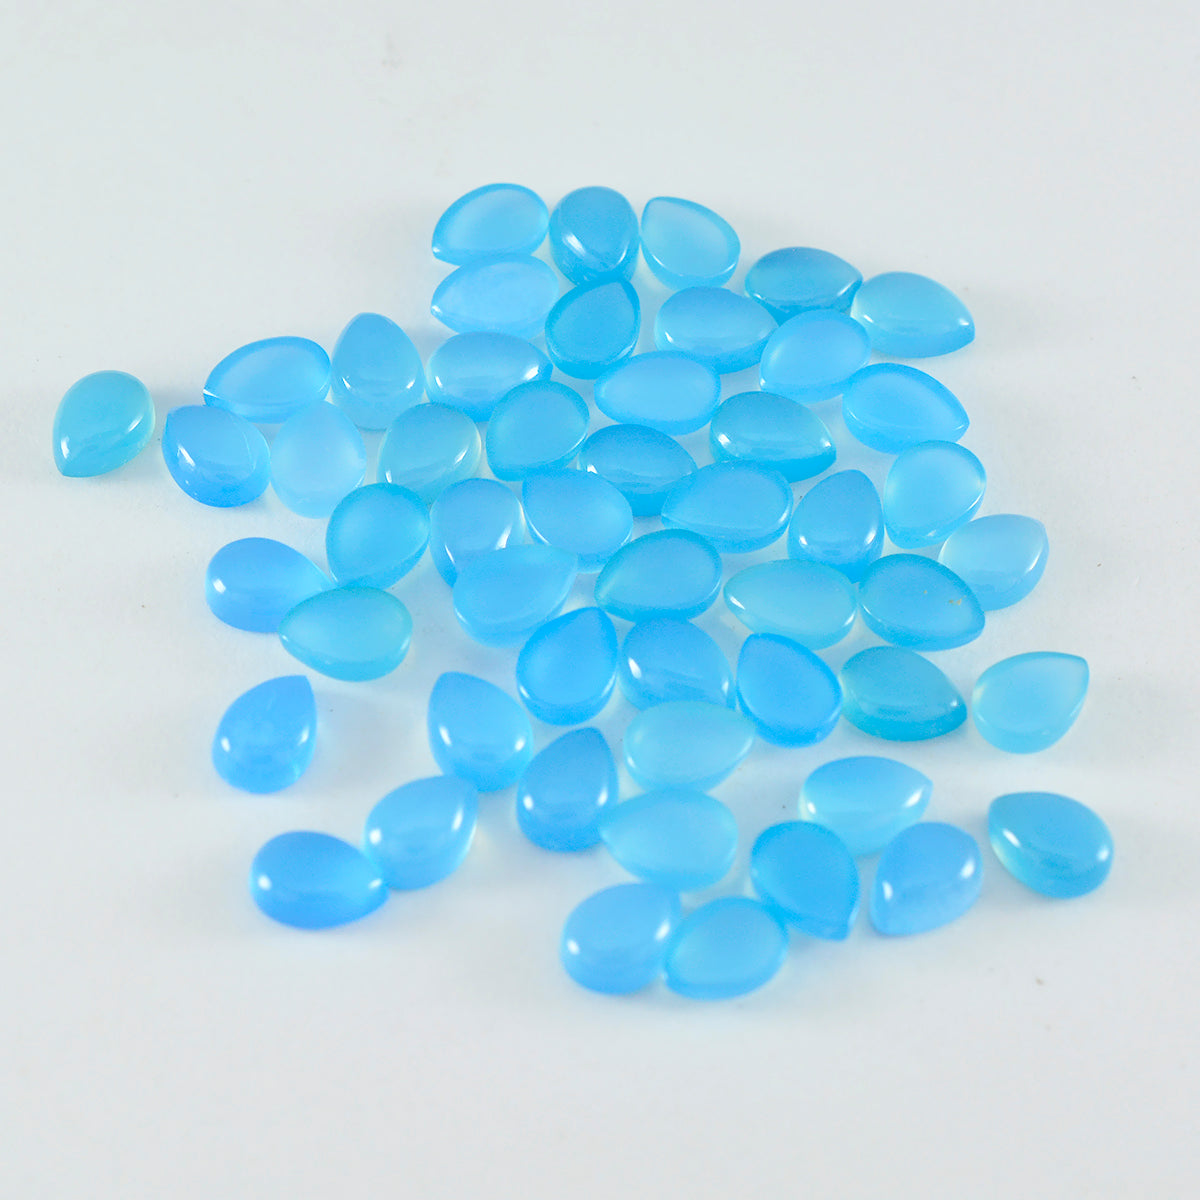 riyogems 1 шт., кабошон из синего халцедона, 5x7 мм, грушевидной формы, качество, свободный драгоценный камень